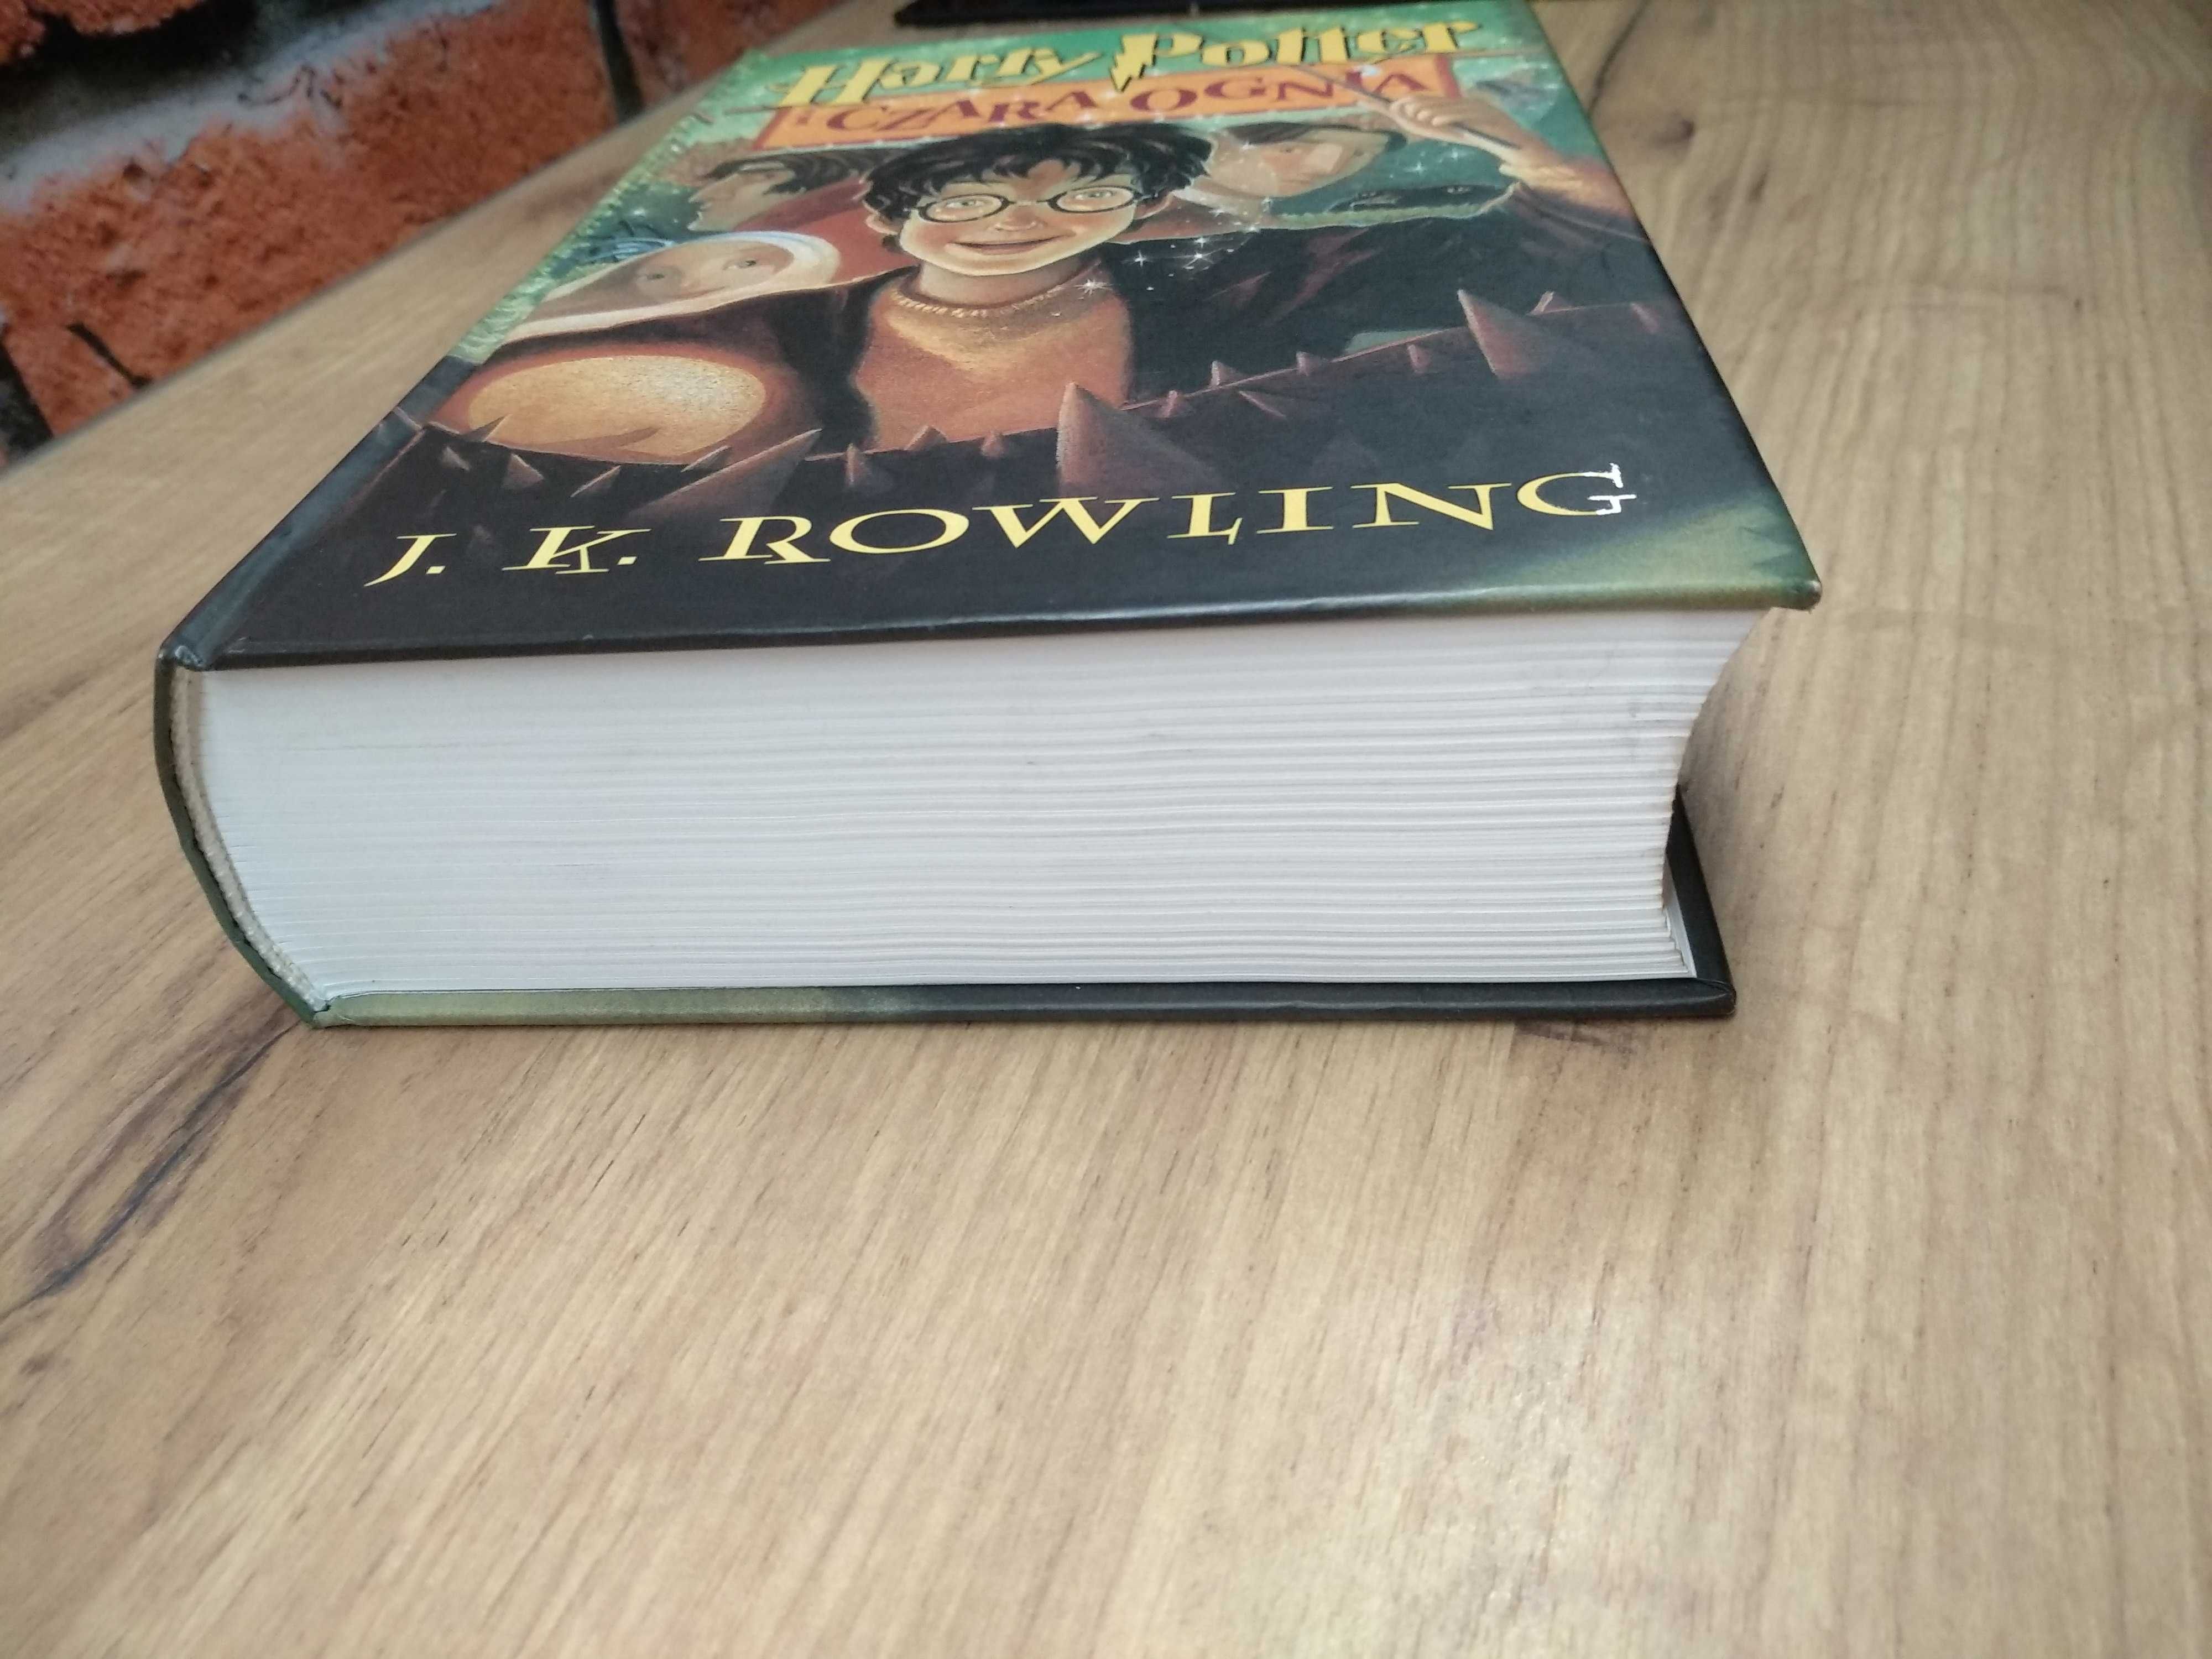 Harry Potter i Czara ognia stare wydanie pierwsza oprawa twarda